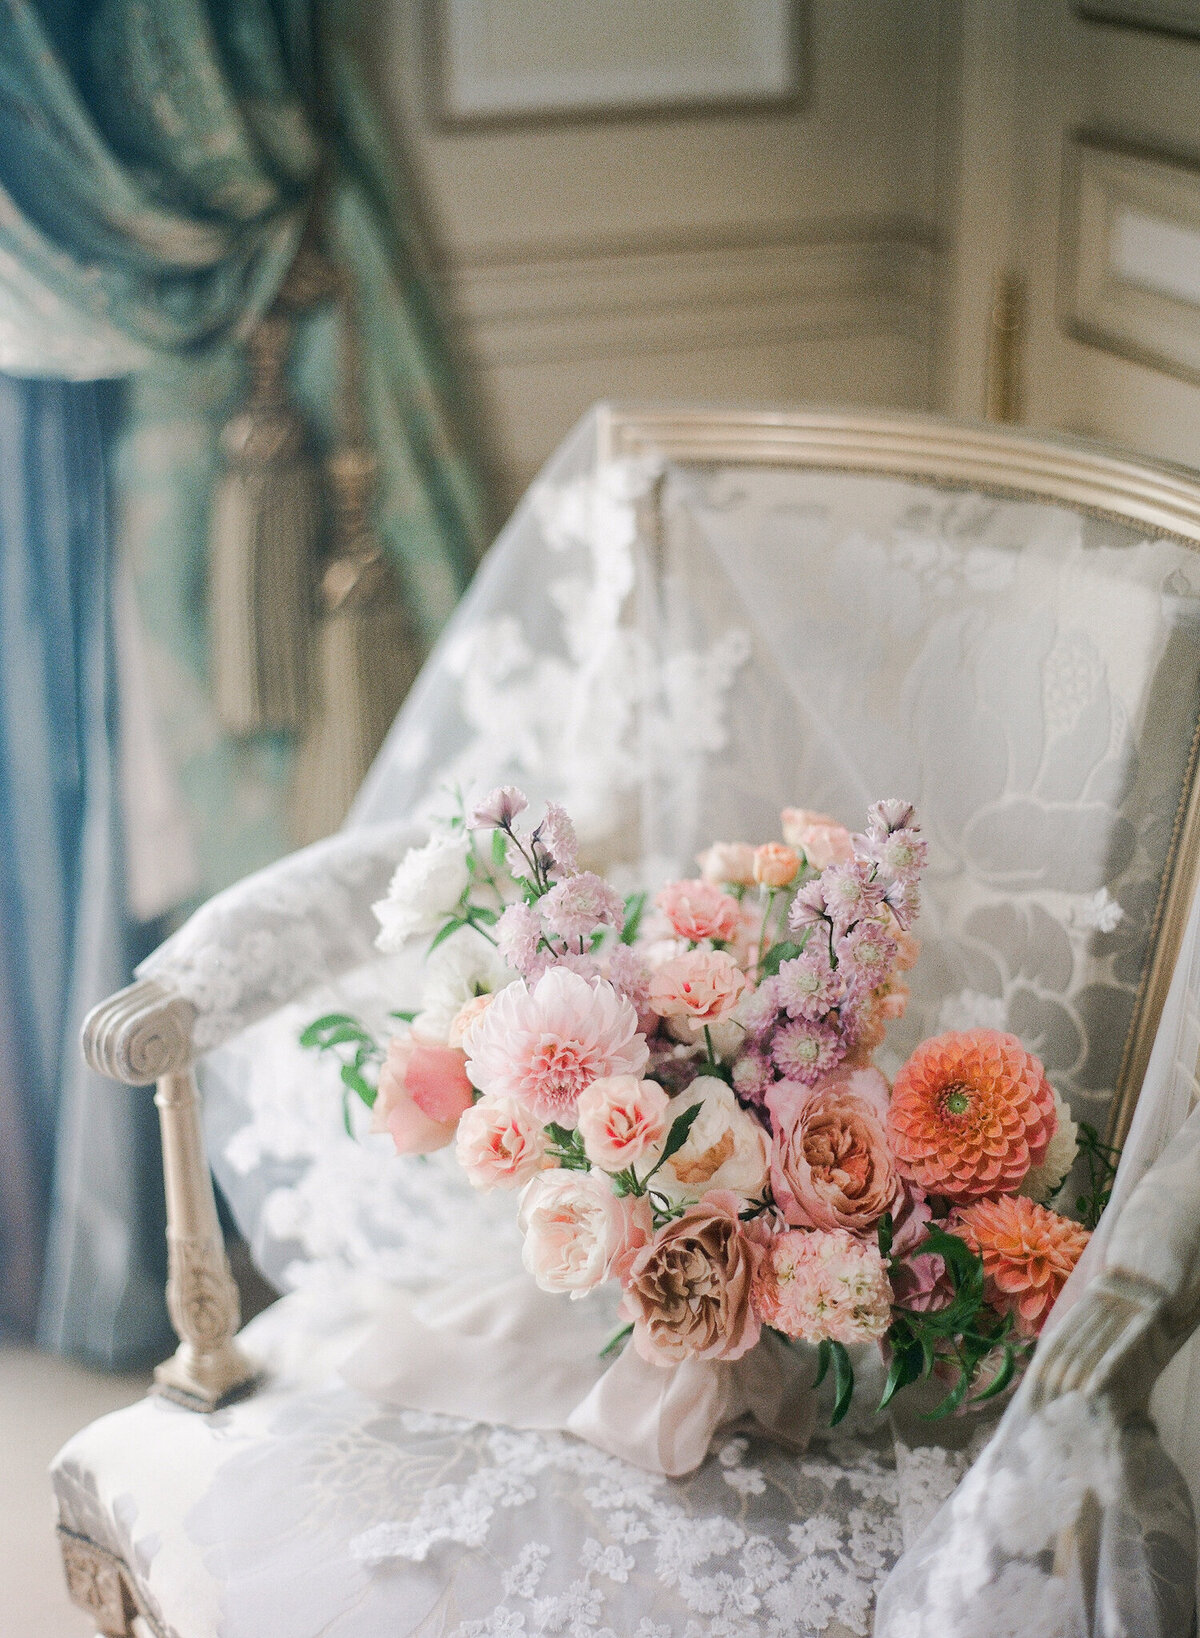 Chateau-de-Vaux-le-Vicomte-wedding-florist-Floraison11